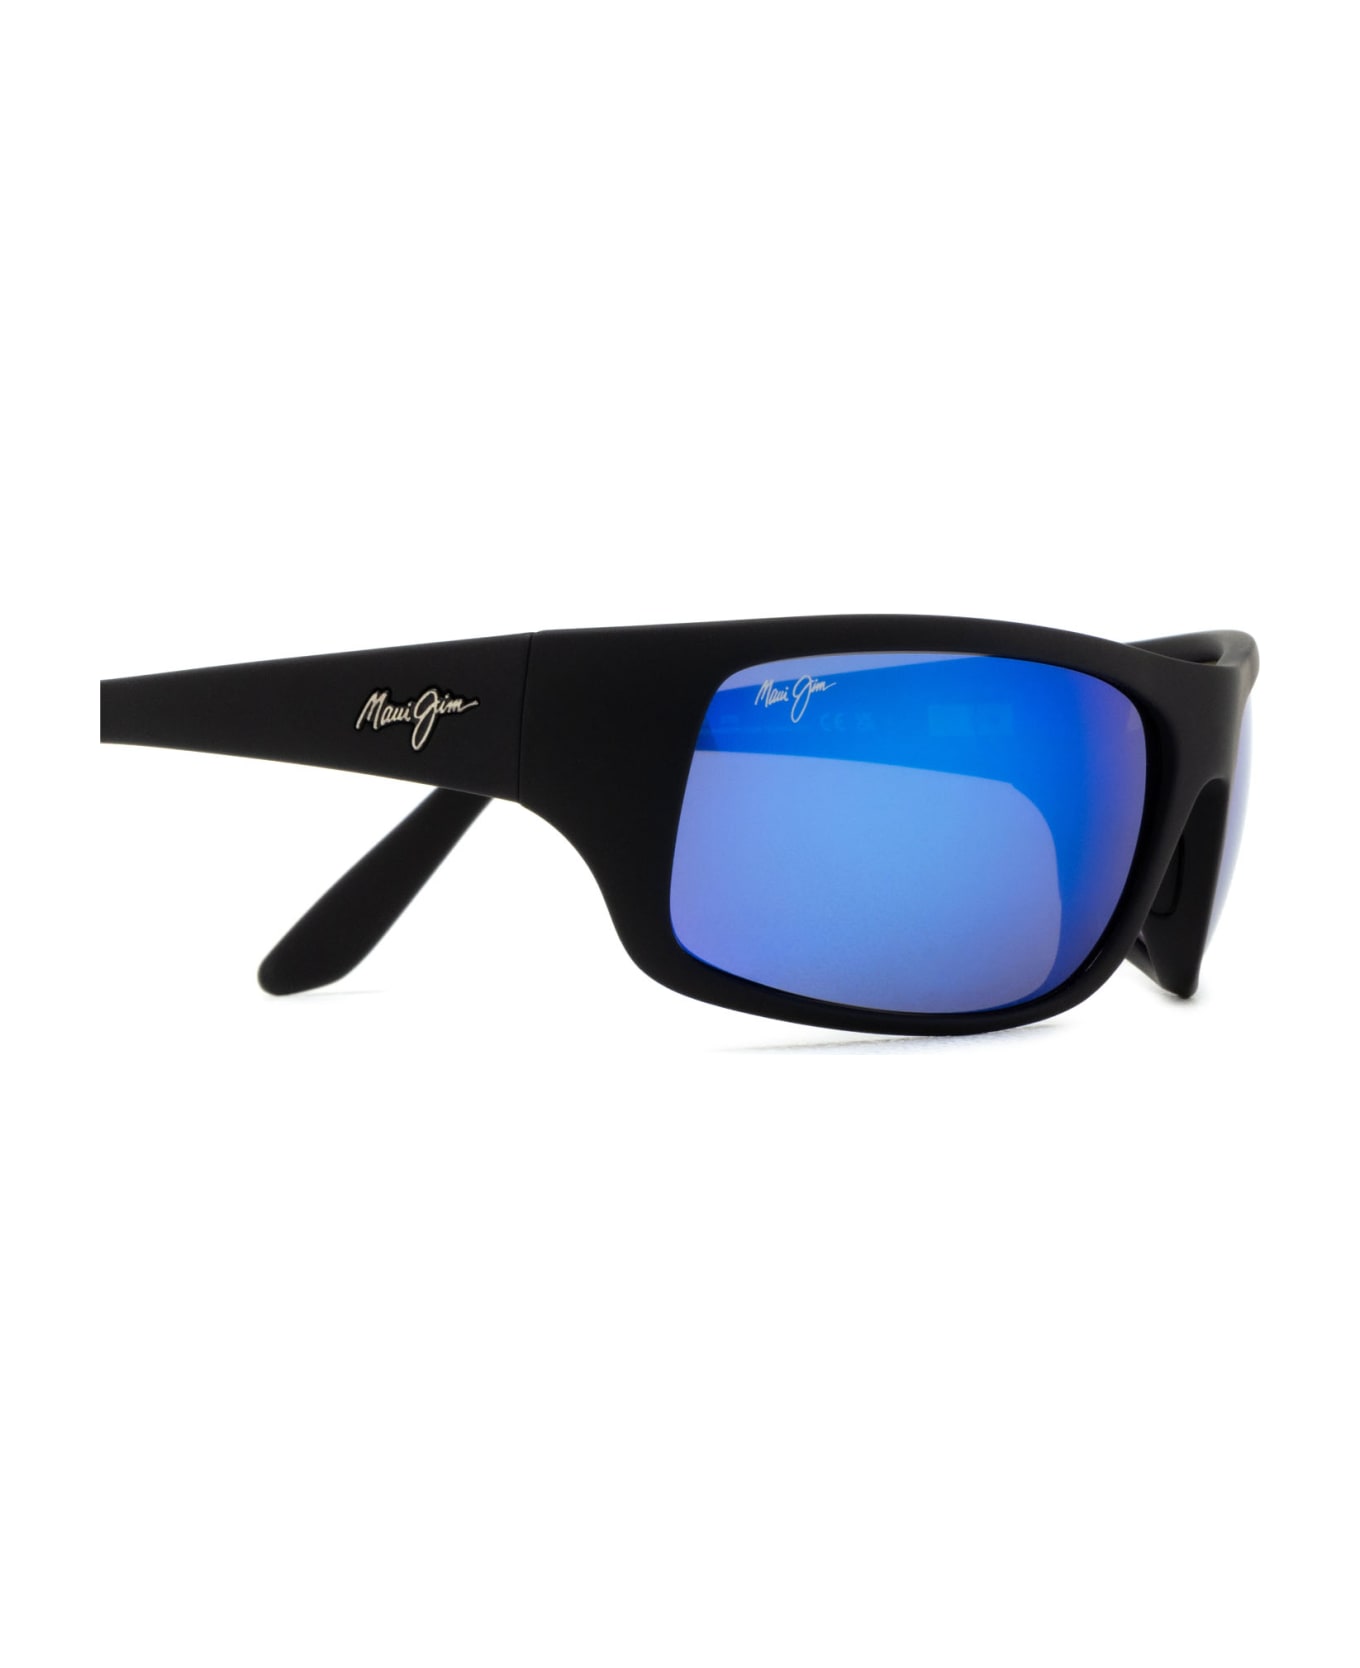 Maui Jim Mj0202s Black Sunglasses - Black